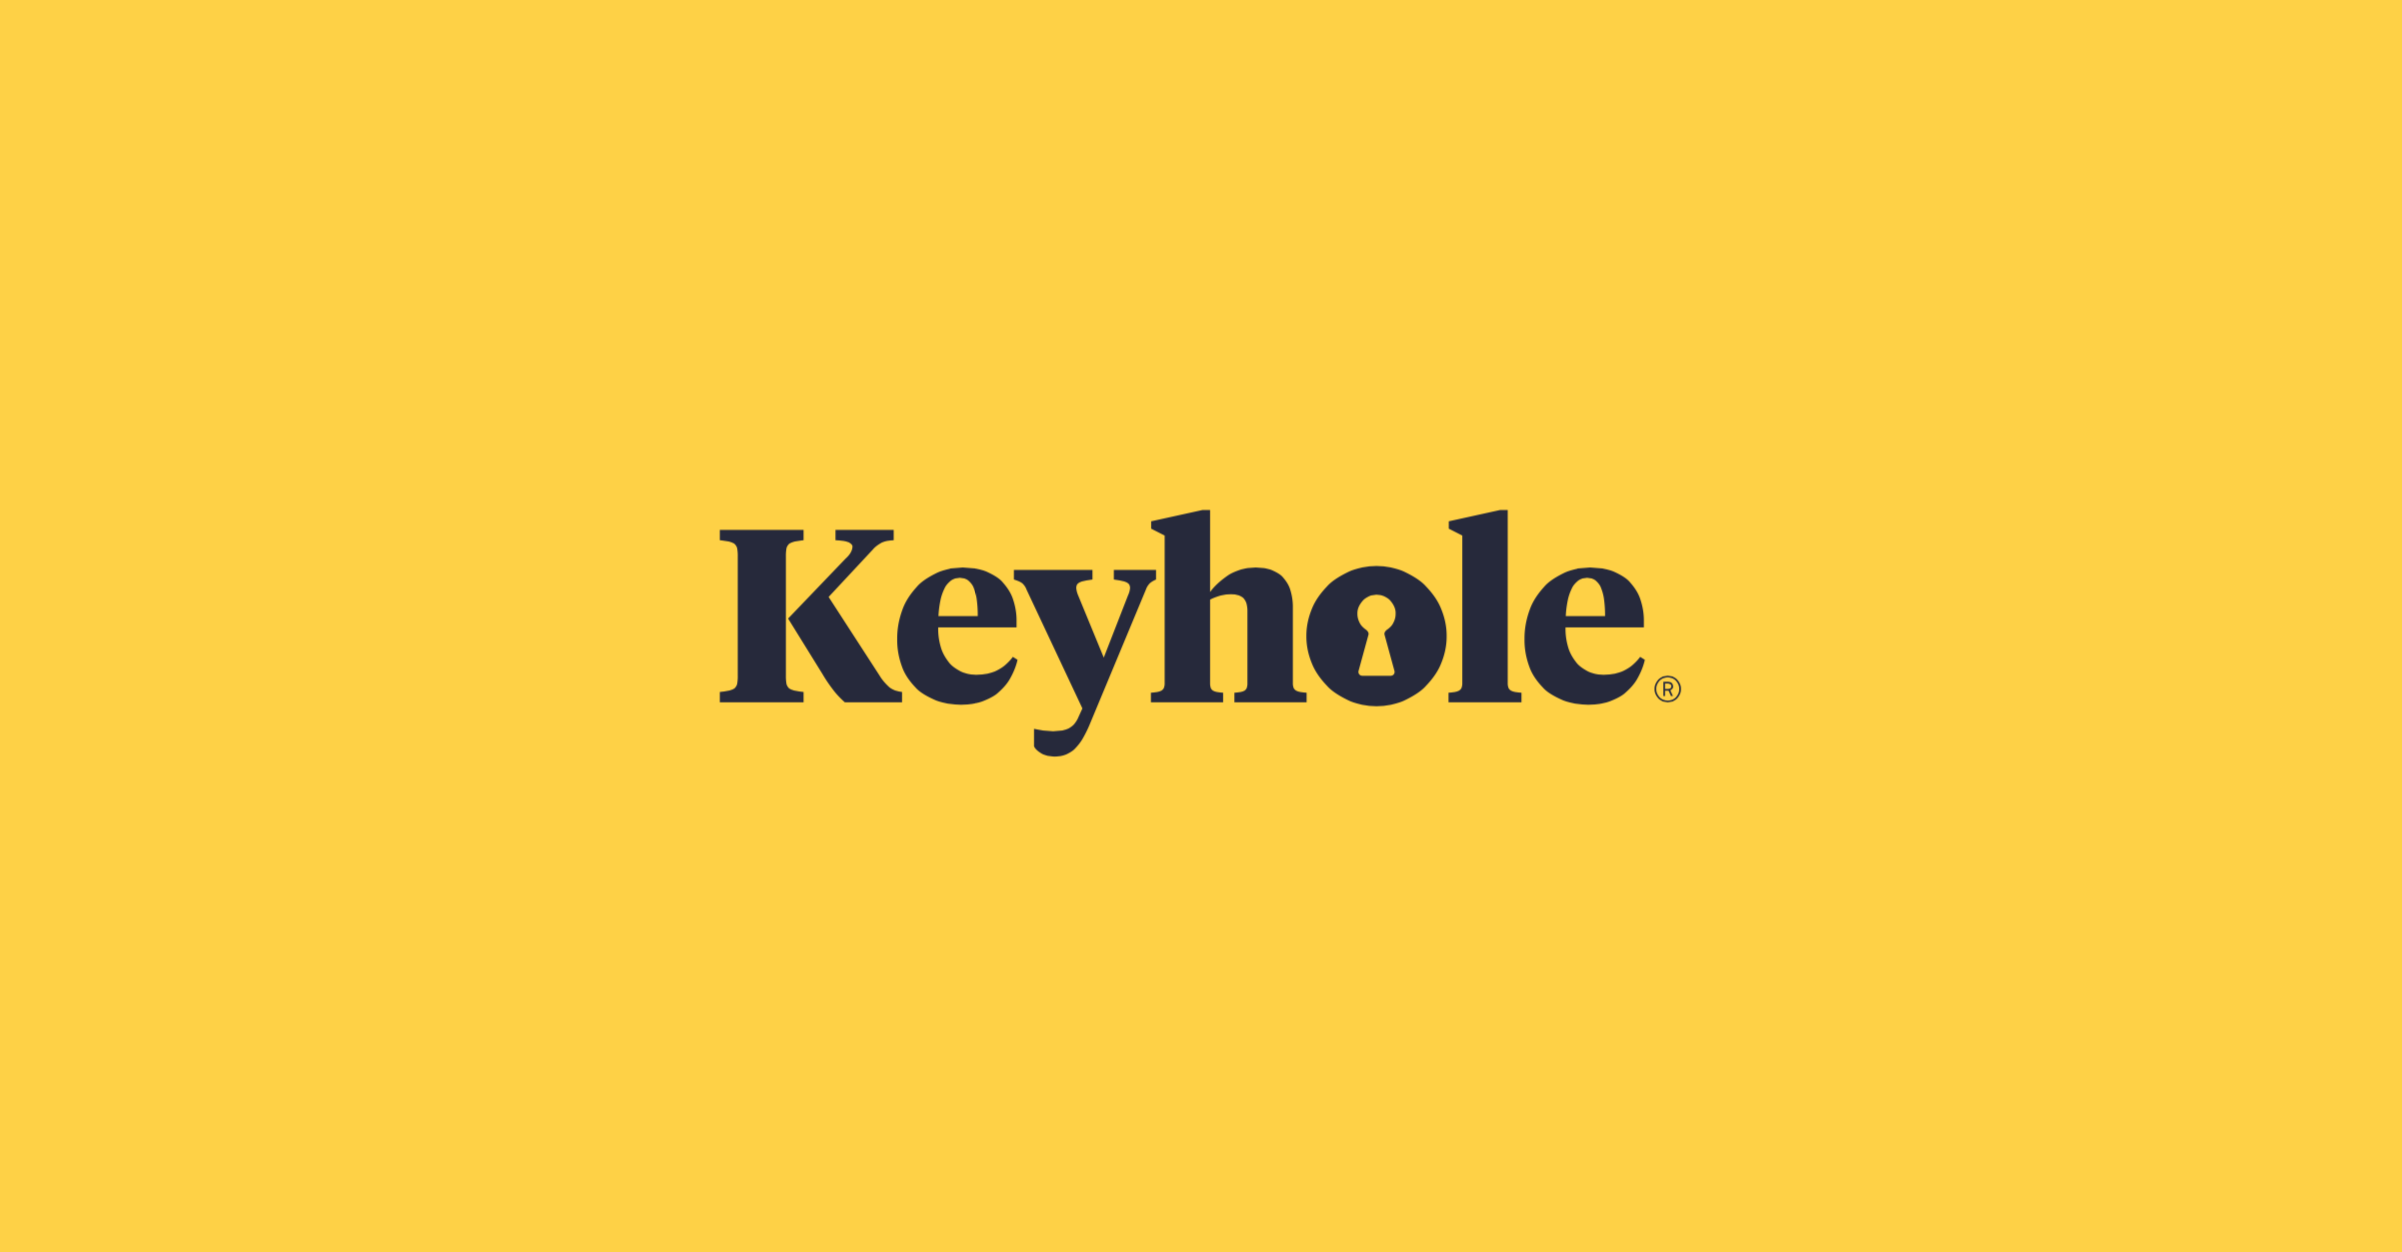 Keyhole_logo_yellow_background